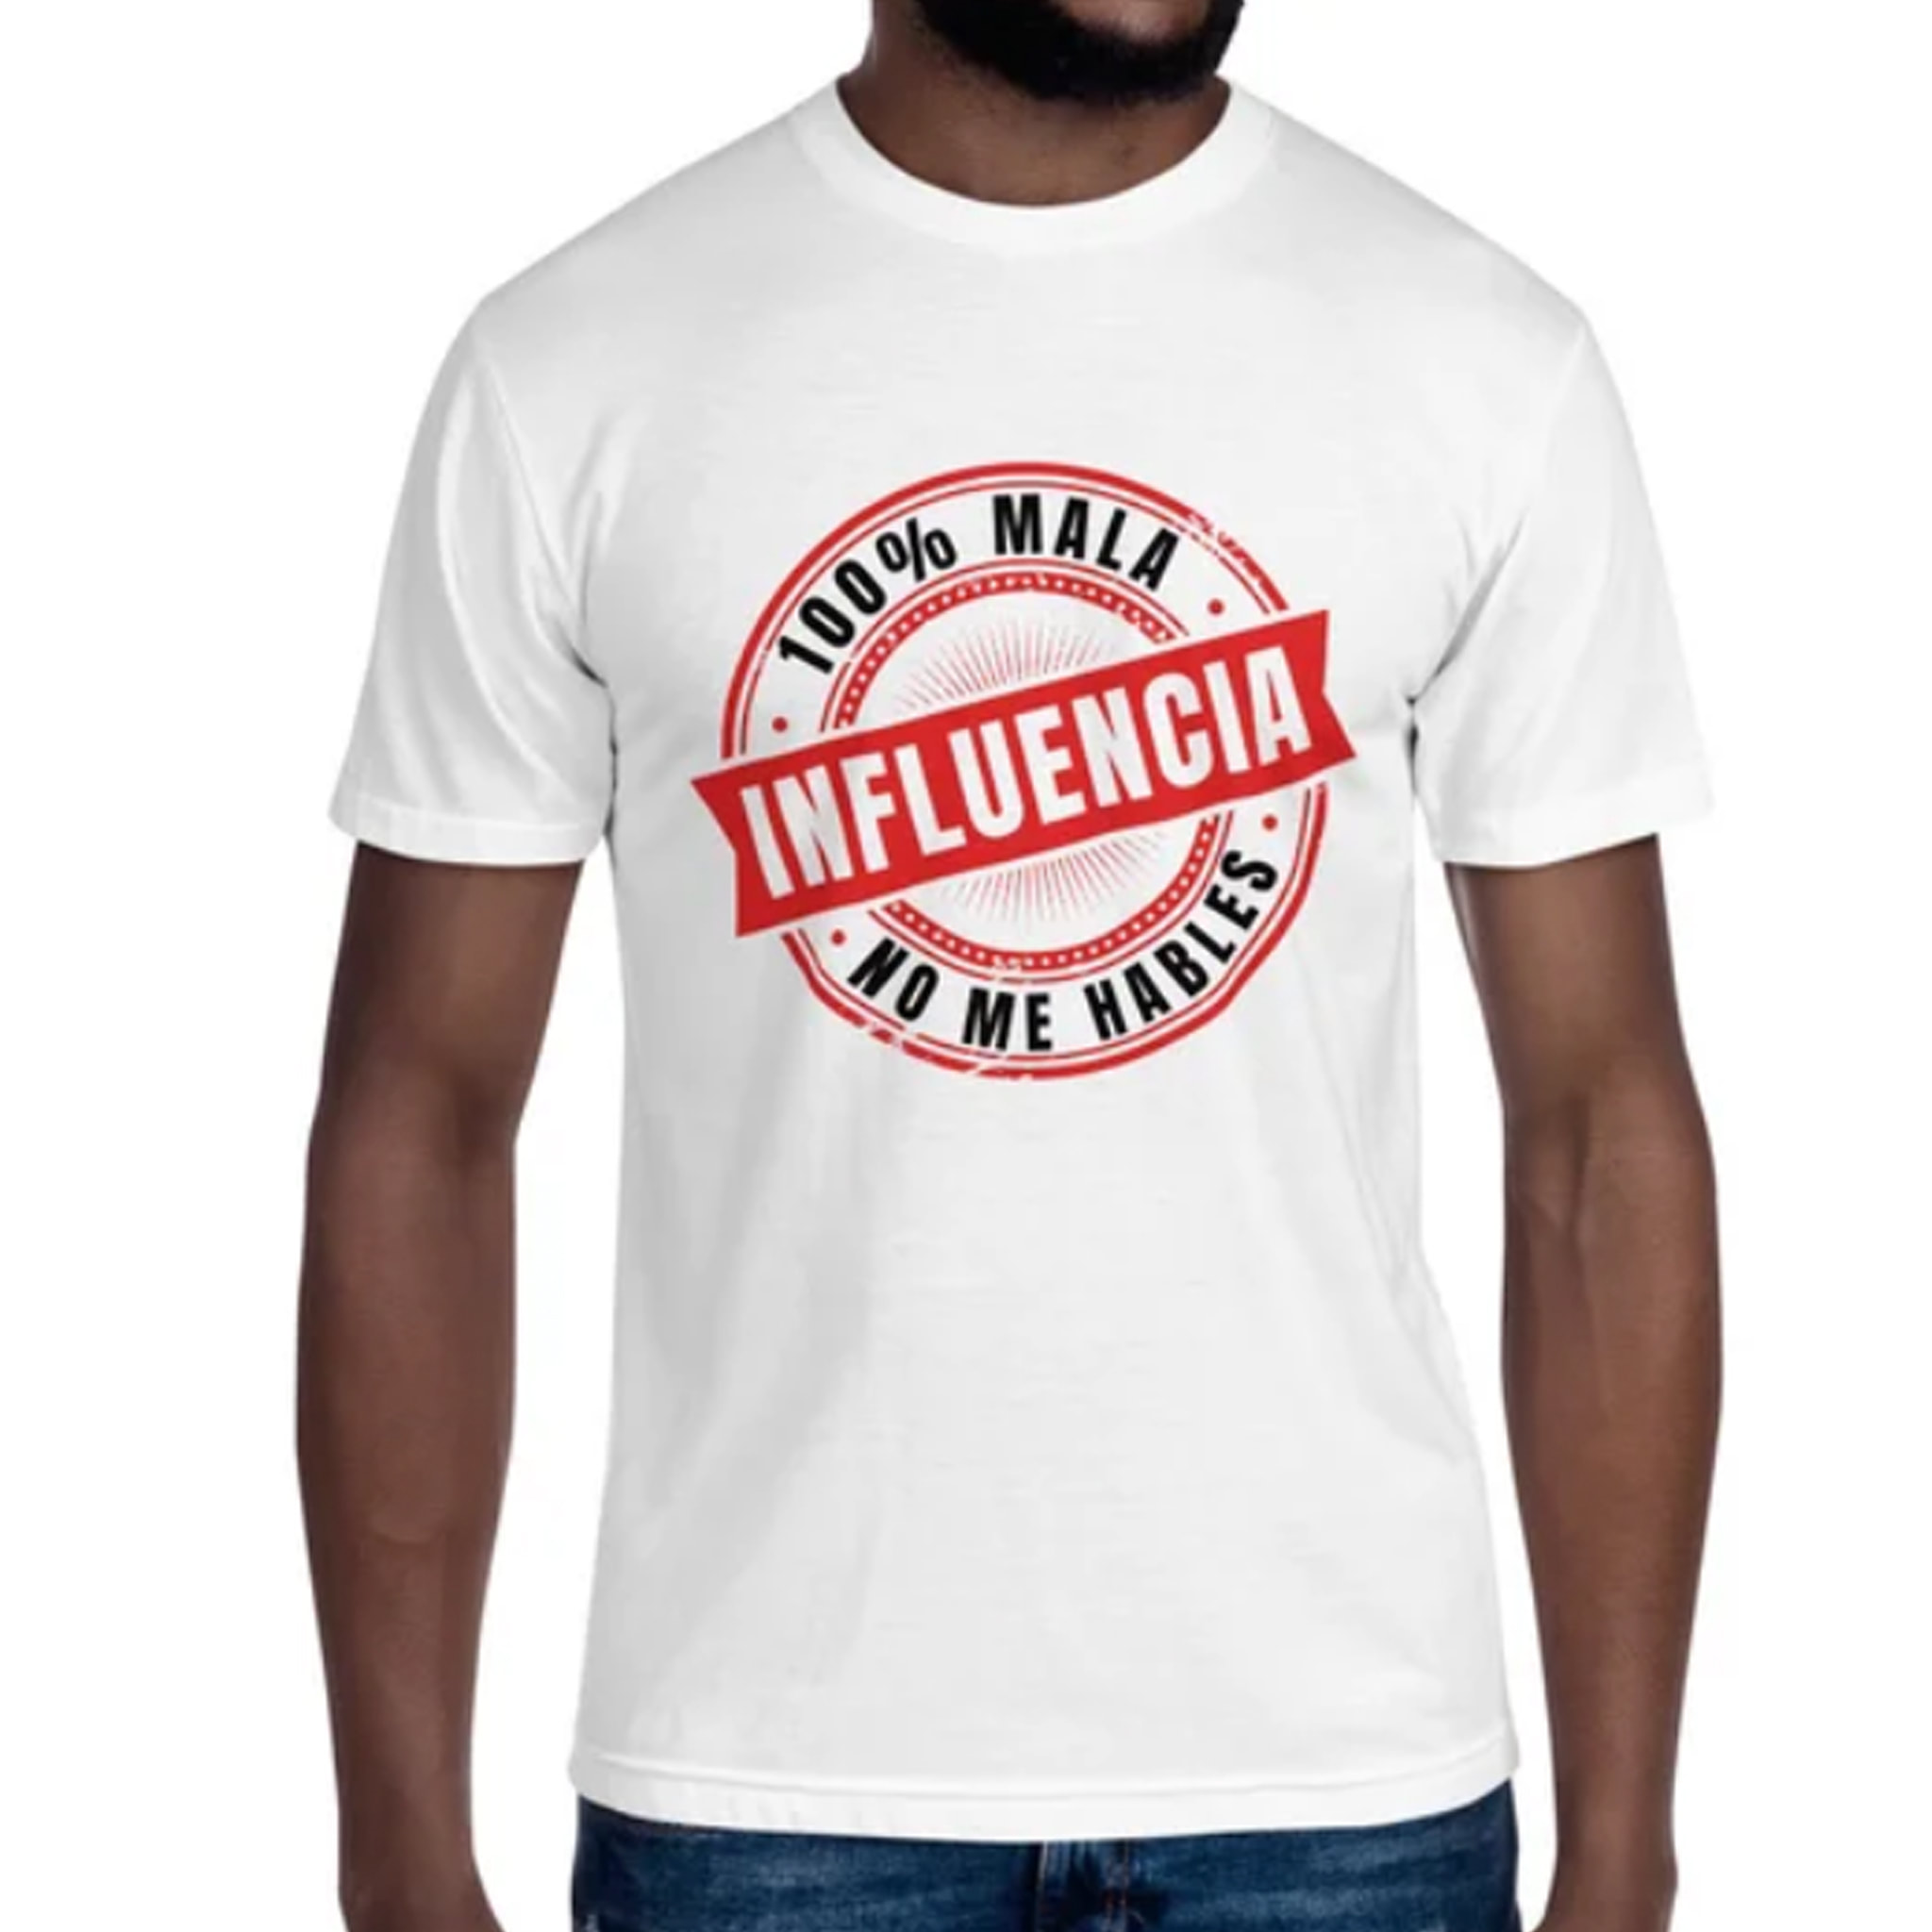 100% Mala Influencia, No Me Hables - Spanish Tshirt